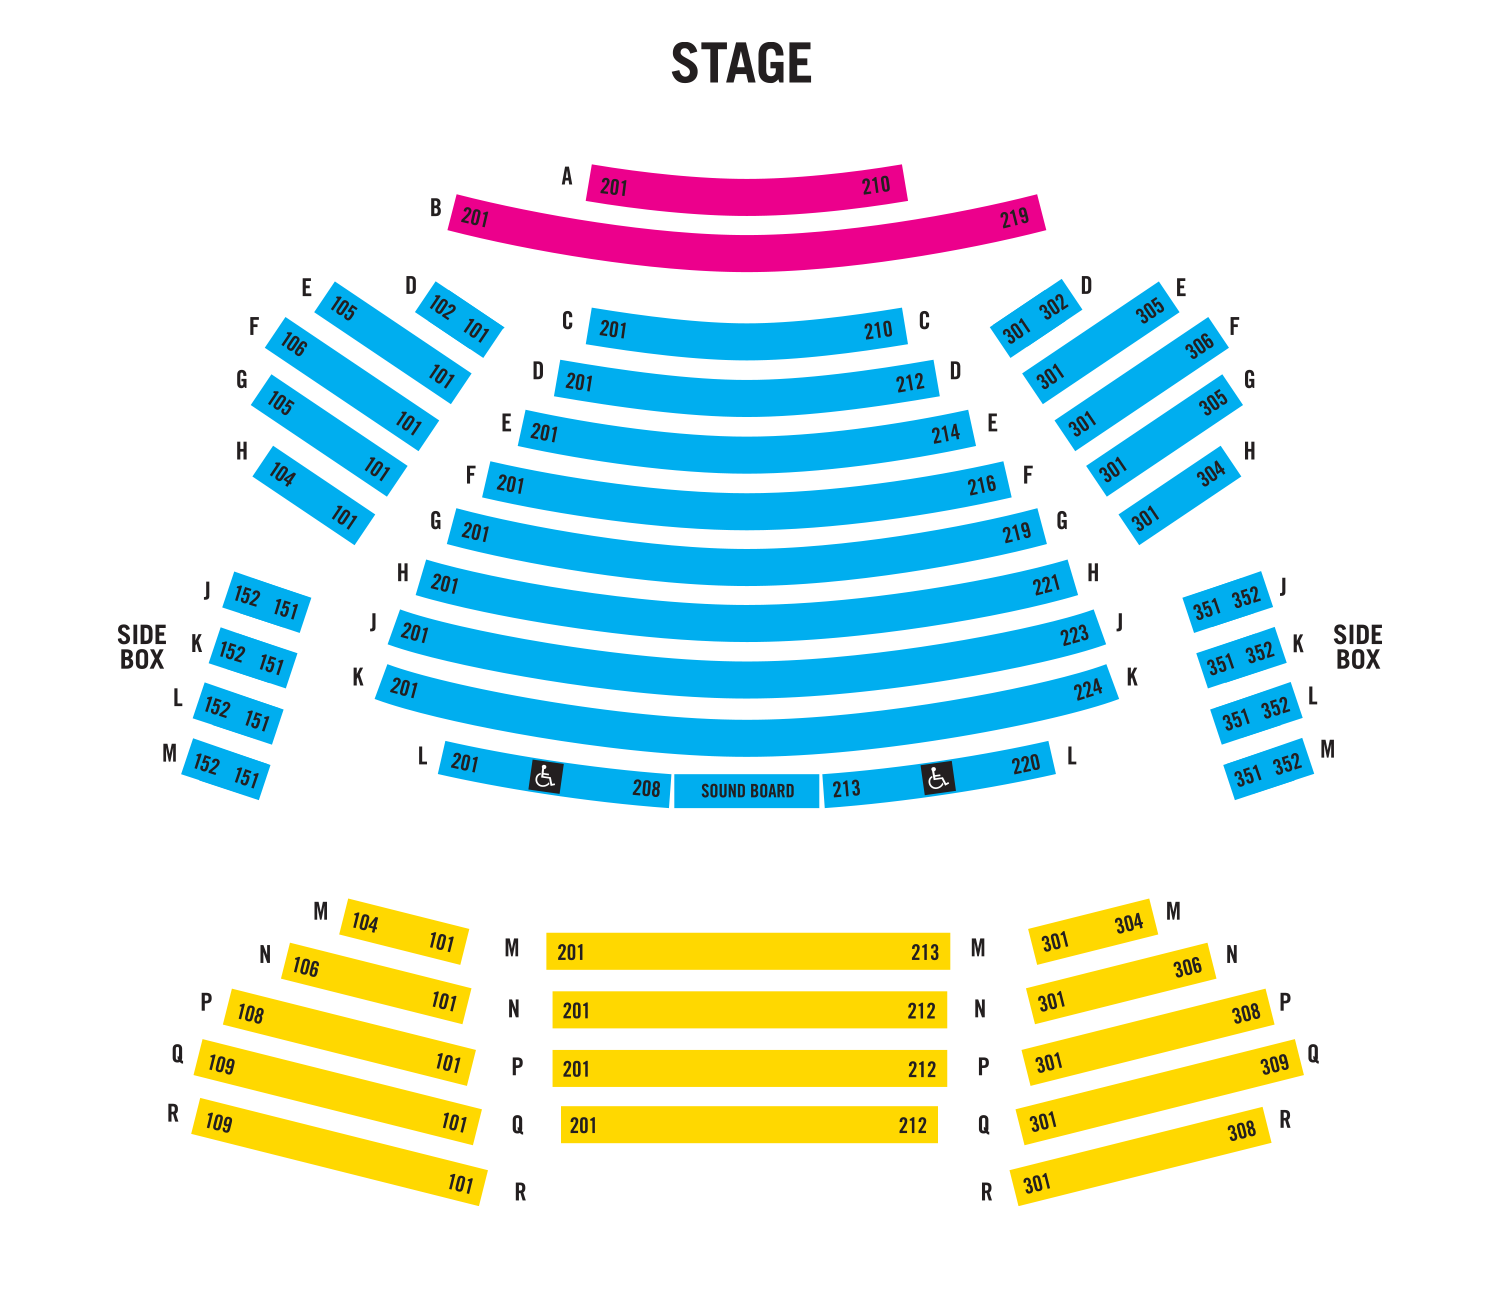 school auditorium seating layout plan